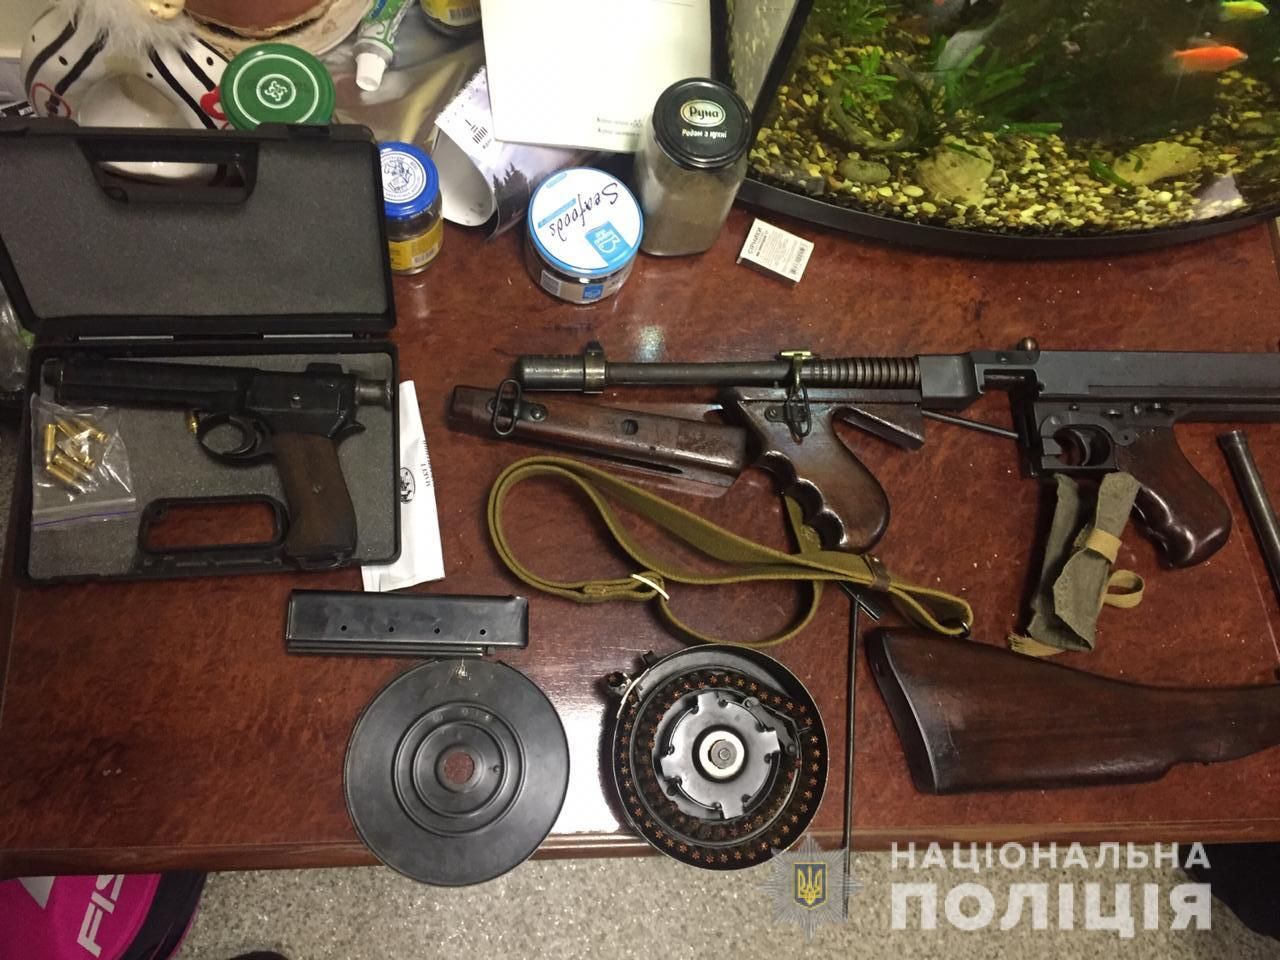 Поліція Дніпра викрила міжнародну банду, яка продавала зброю: фото